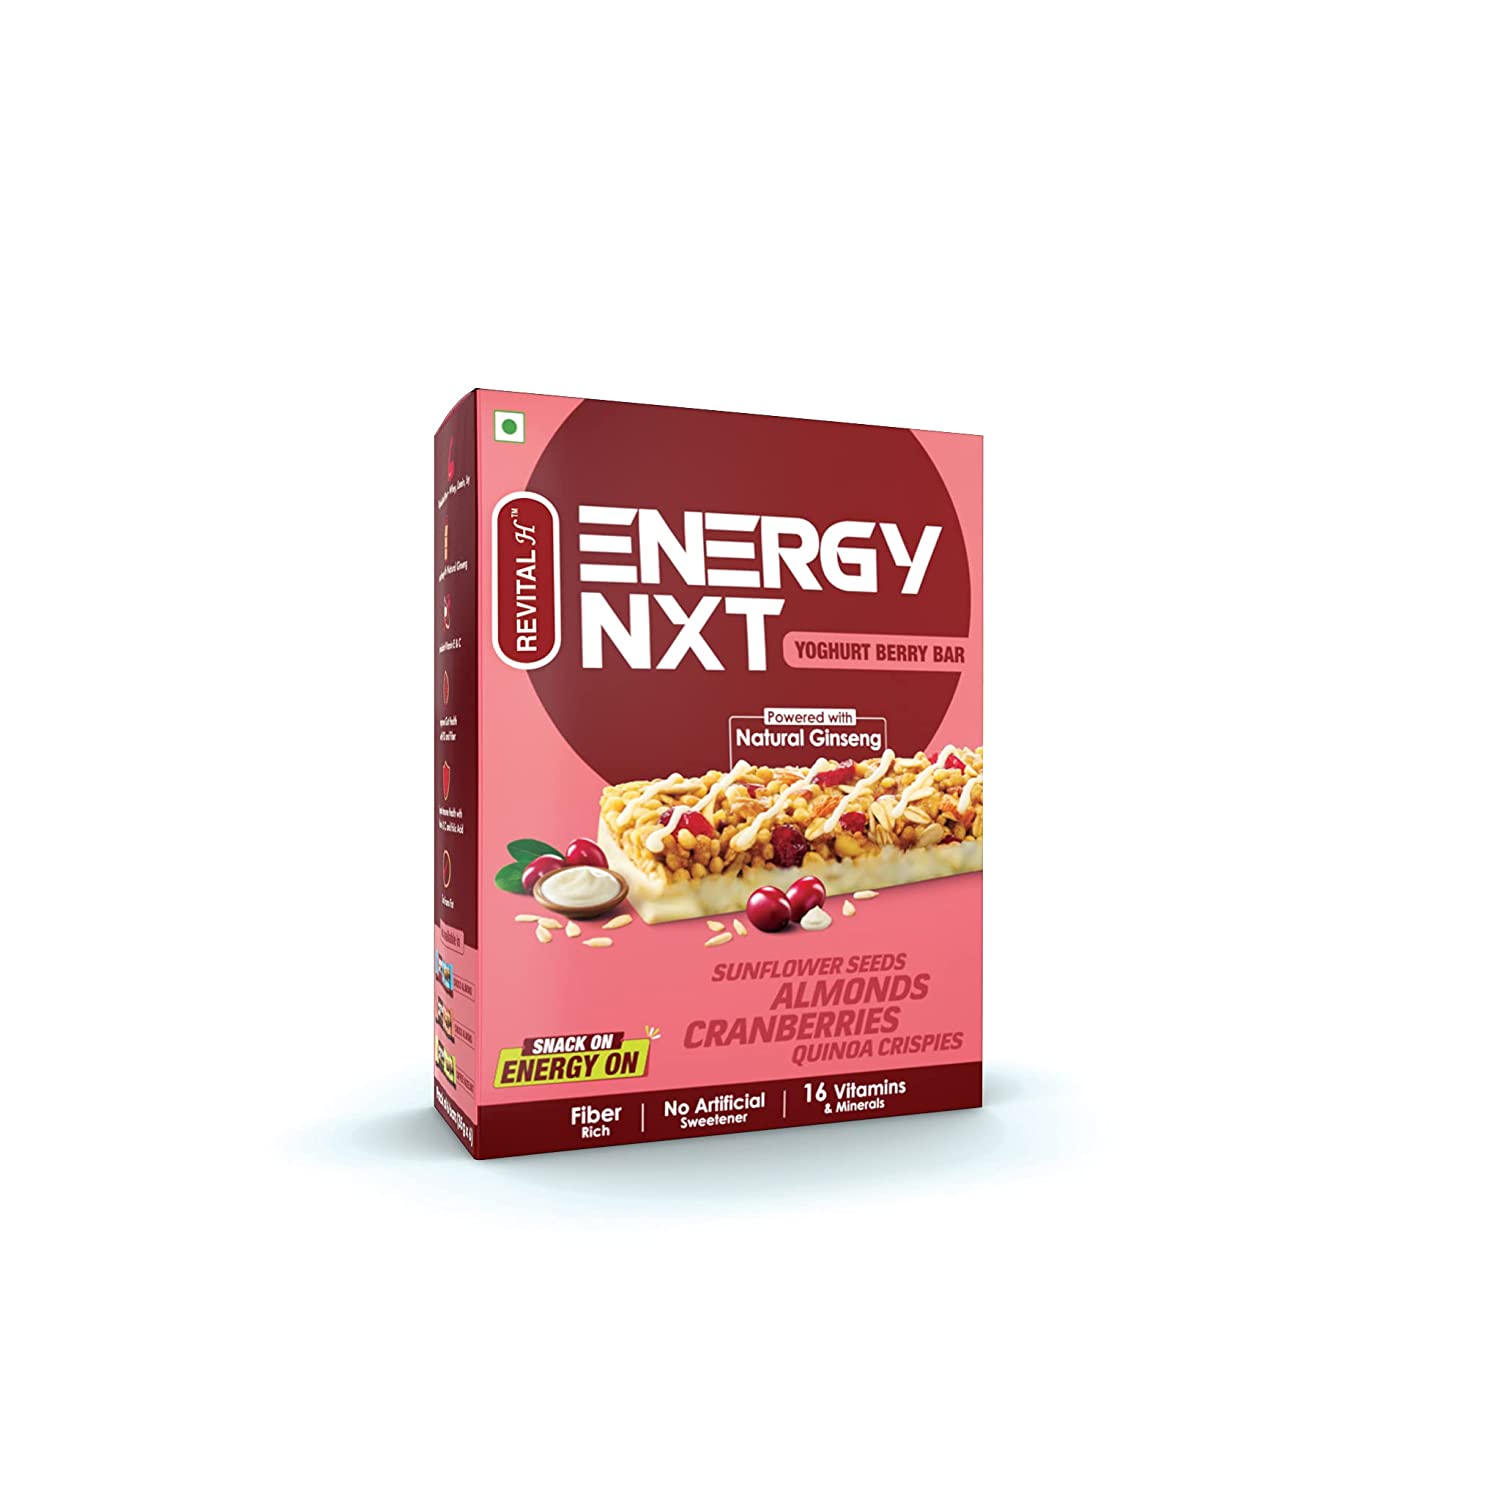 Revital H Energy NXT Yoghurt Berry Bar Image